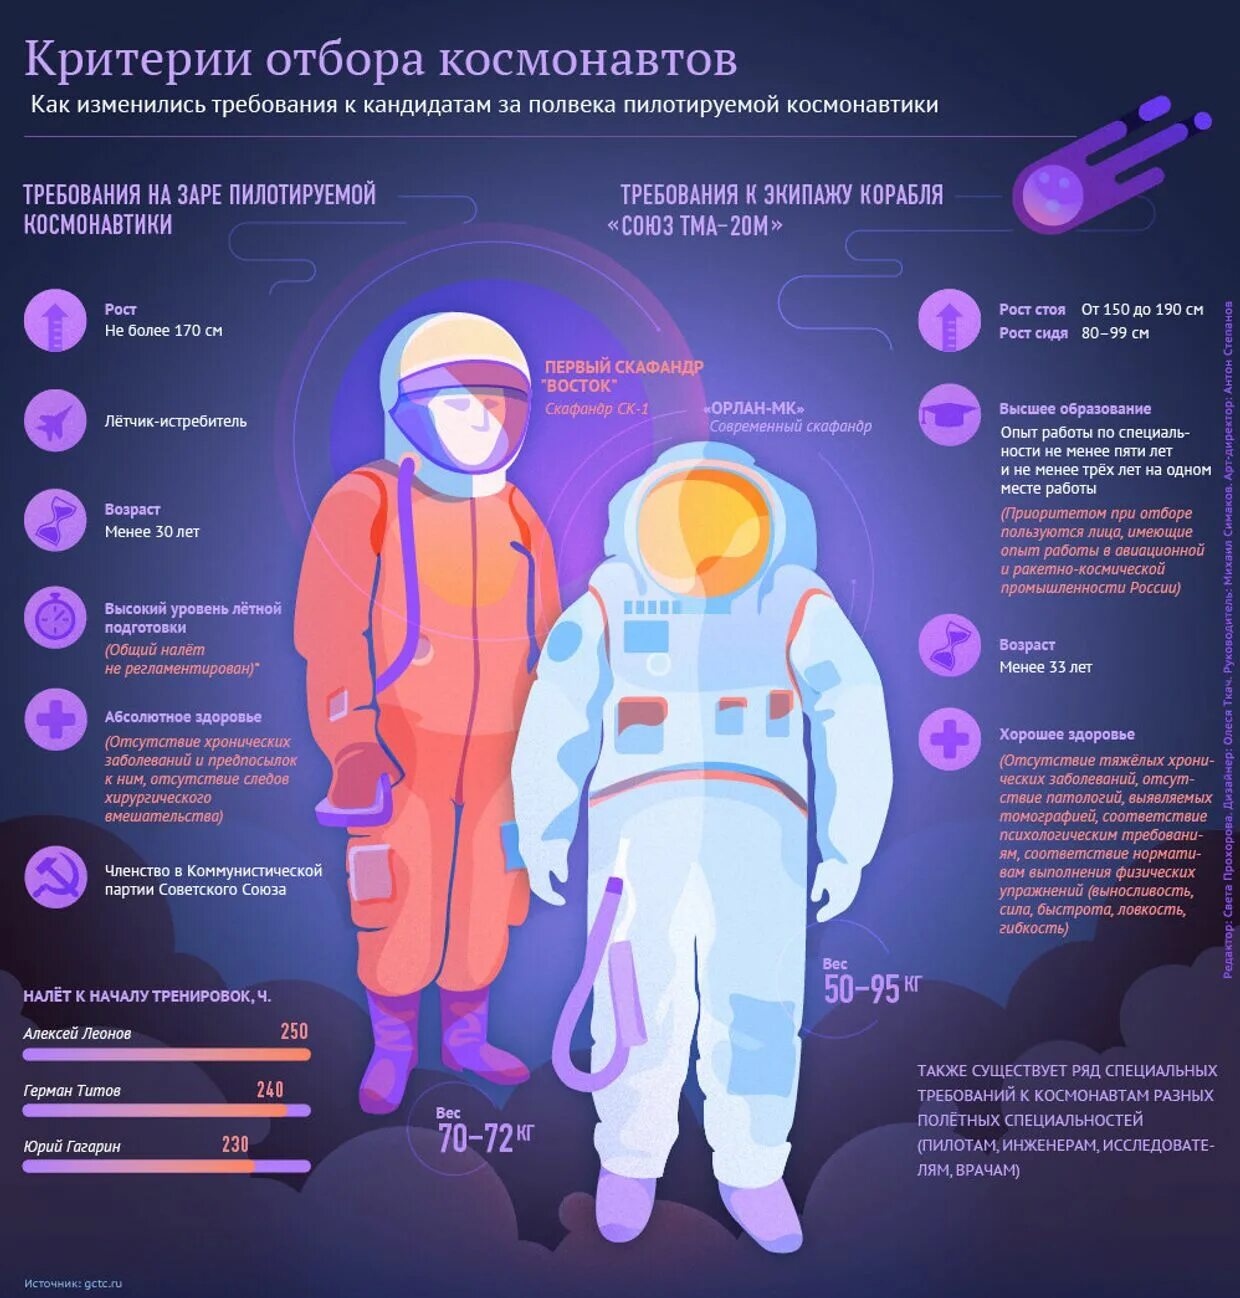 Слушать стать космонавтом. Требования к космонавтам. Критерии отбора Космонавтов. Инфографика космос детям. Освоение космоса инфографика.